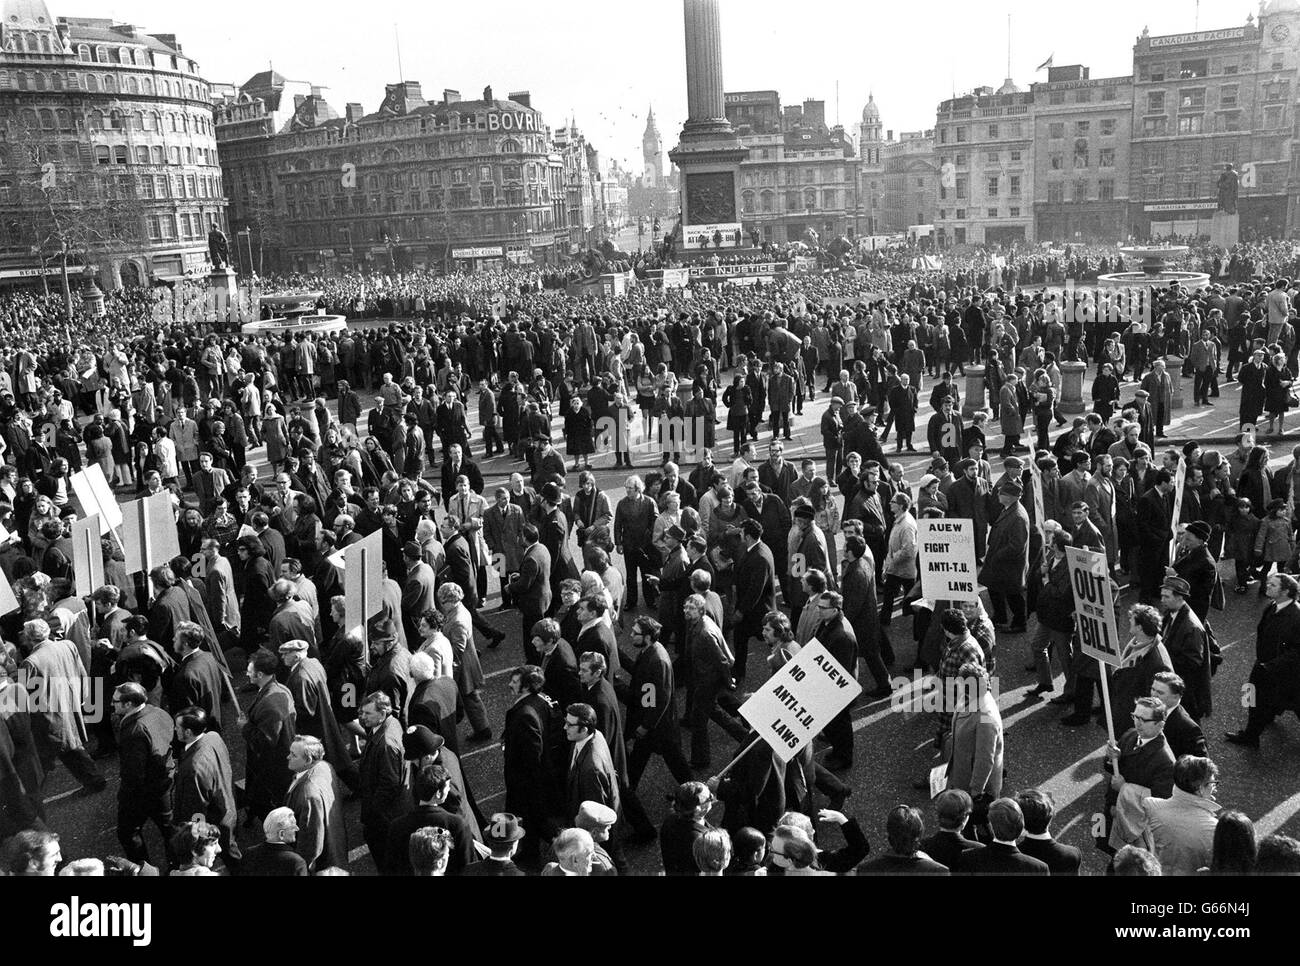 Fast jeder Quadratmeter wurde auf dem Trafalgar Square in einer riesigen, aber friedlichen Kundgebung gegen das Gesetz der Regierung über industrielle Beziehungen überdacht. Stockfoto